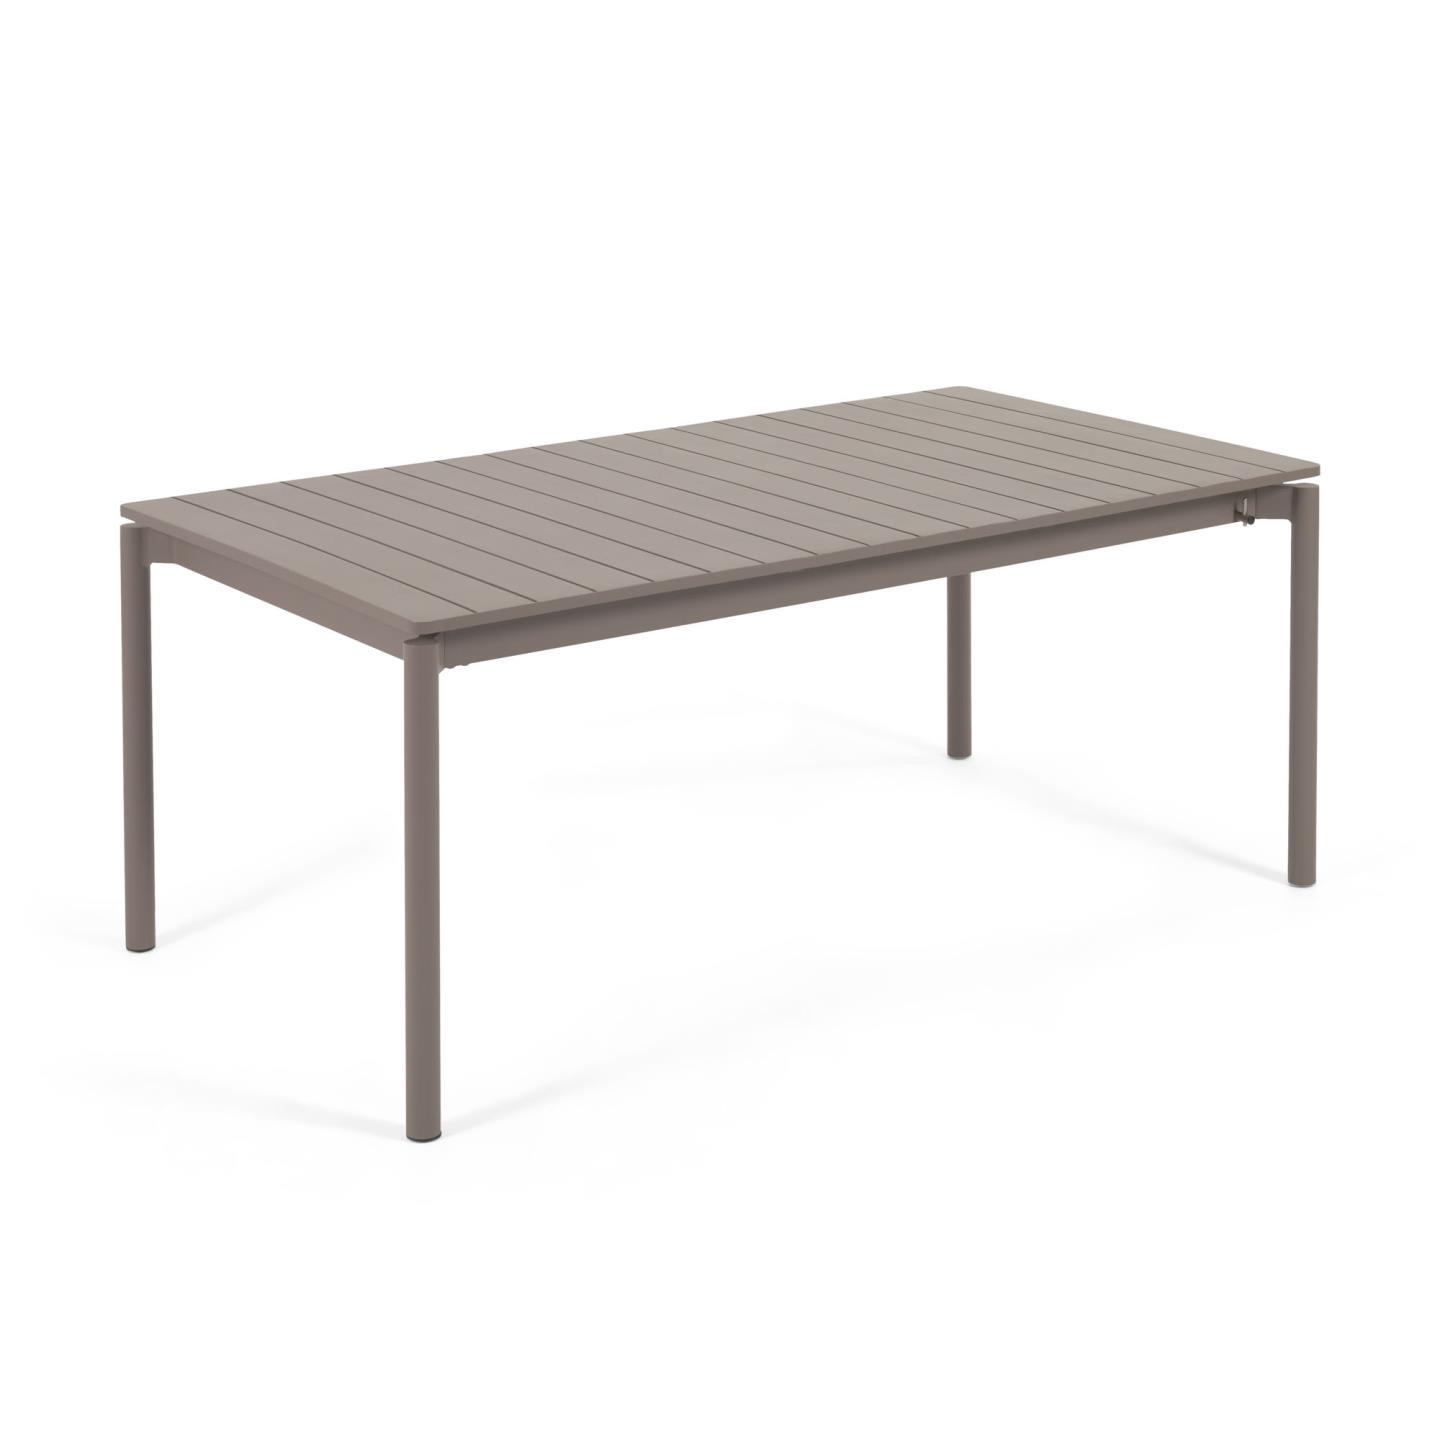 Раздвижной алюминиевый садовый стол Zaltana с коричневой матовой отделкой 180 (240) x 100 см